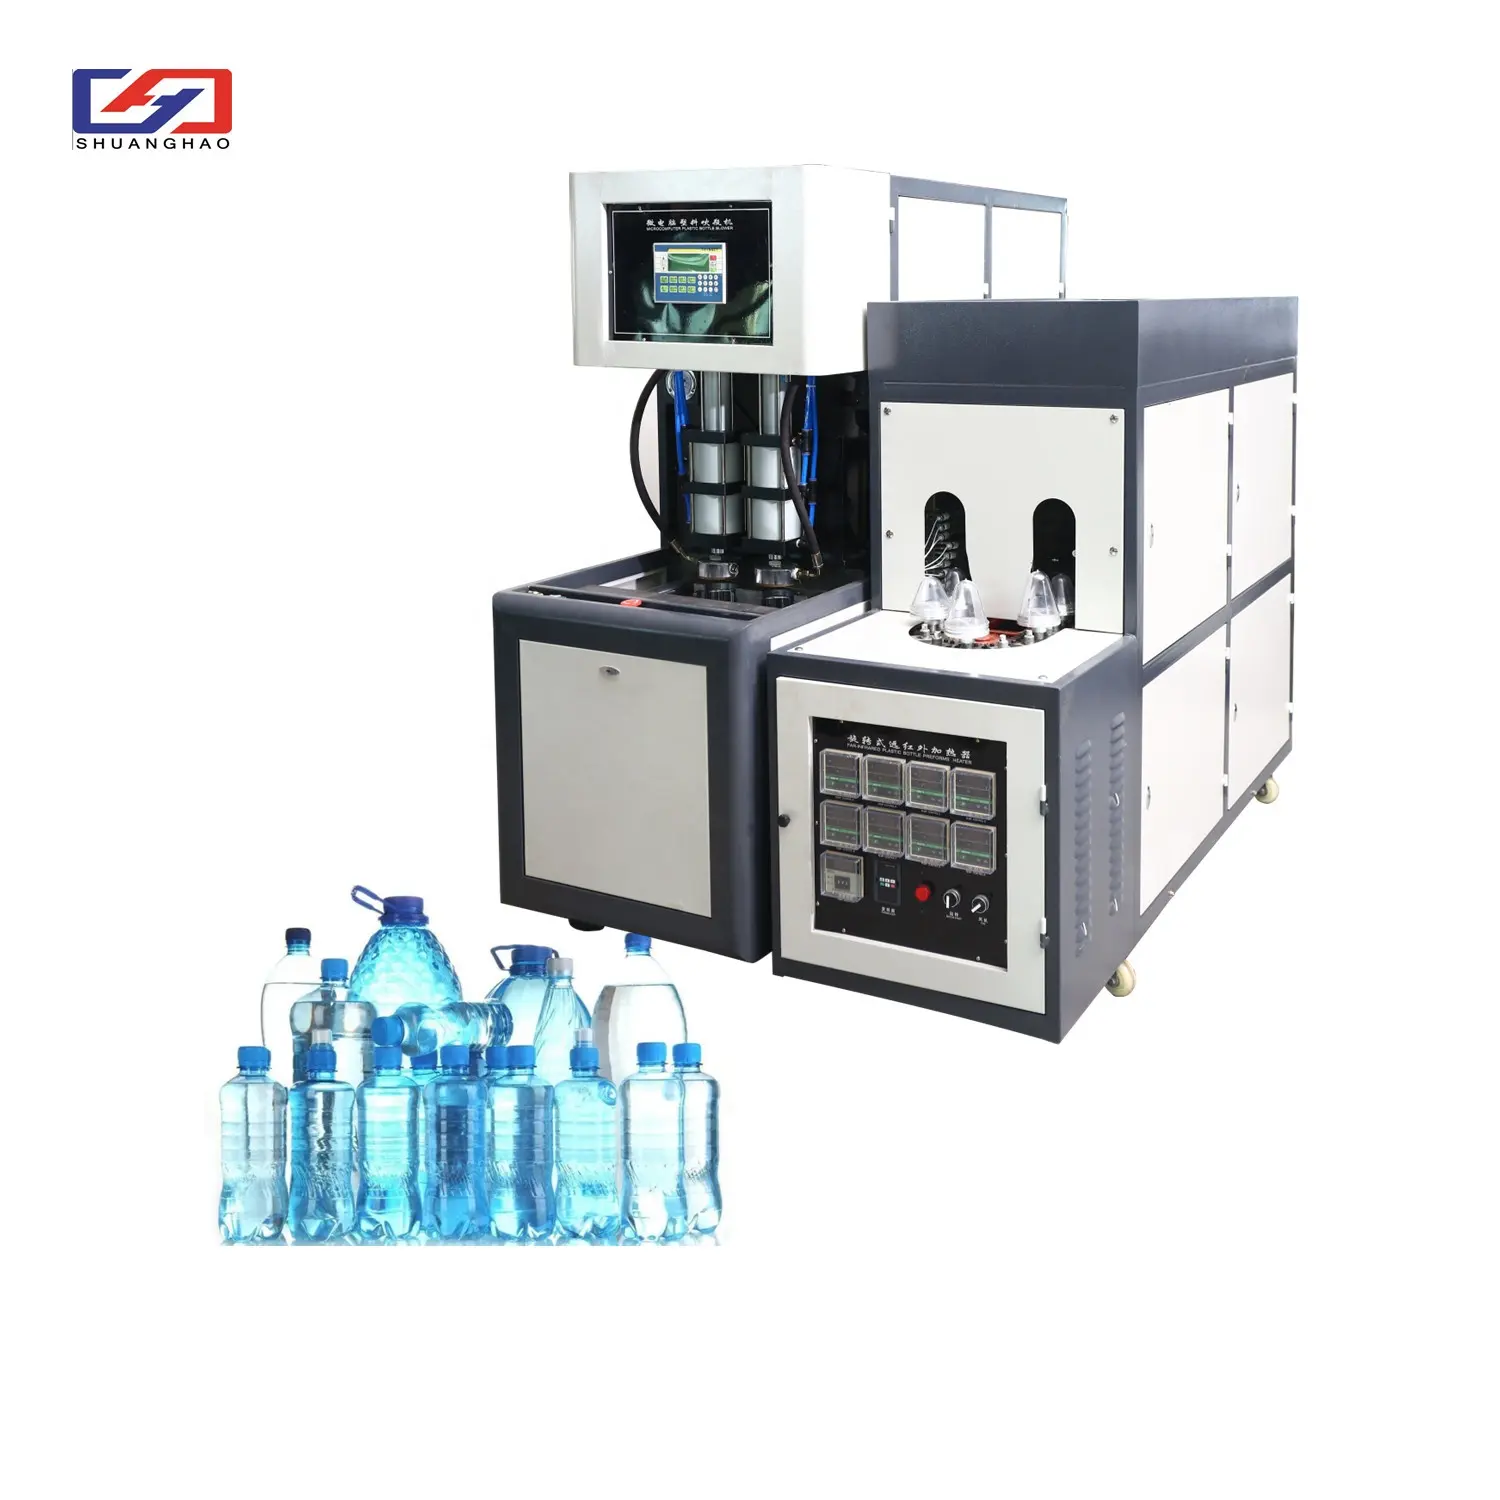 Máquina semiautomática de moldeo por soplado de PET, para soplar botellas de diferente volumen, en oferta